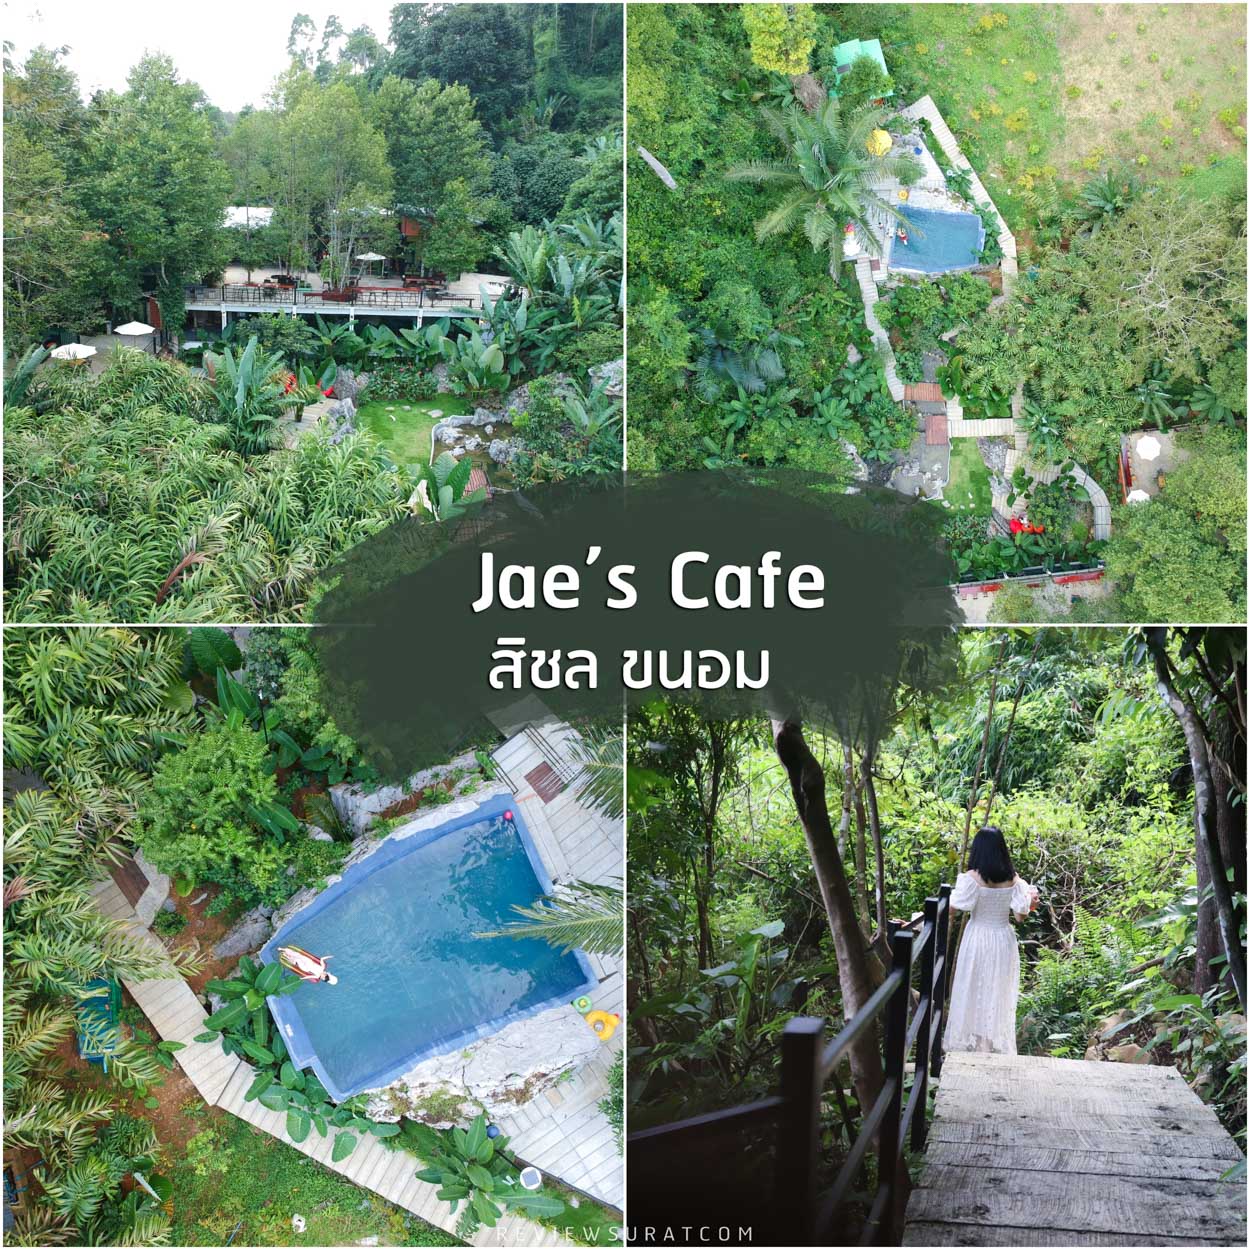 Jae-s-Cafe -คาเฟ่เปิดใหม่กลางหุบเขา-สิชล-นครศรีธรรมราช-ติดริมภูเขา-กลางป่าอย่างแท้จริง-มีสระว่ายน้ำ-อาหารอร่อย-เครื่องดื่มครบ-มีทางลับๆขึ้นเขา-เข้าถ้ำด้วย-บอกเลยยังไงก็ต้องมาเช็คอิน

 ที่เที่ยวนครศรี,จุดเช็คอินนครศรี,ที่พักนครศรี,แคมป์ปิ้งนครศรี